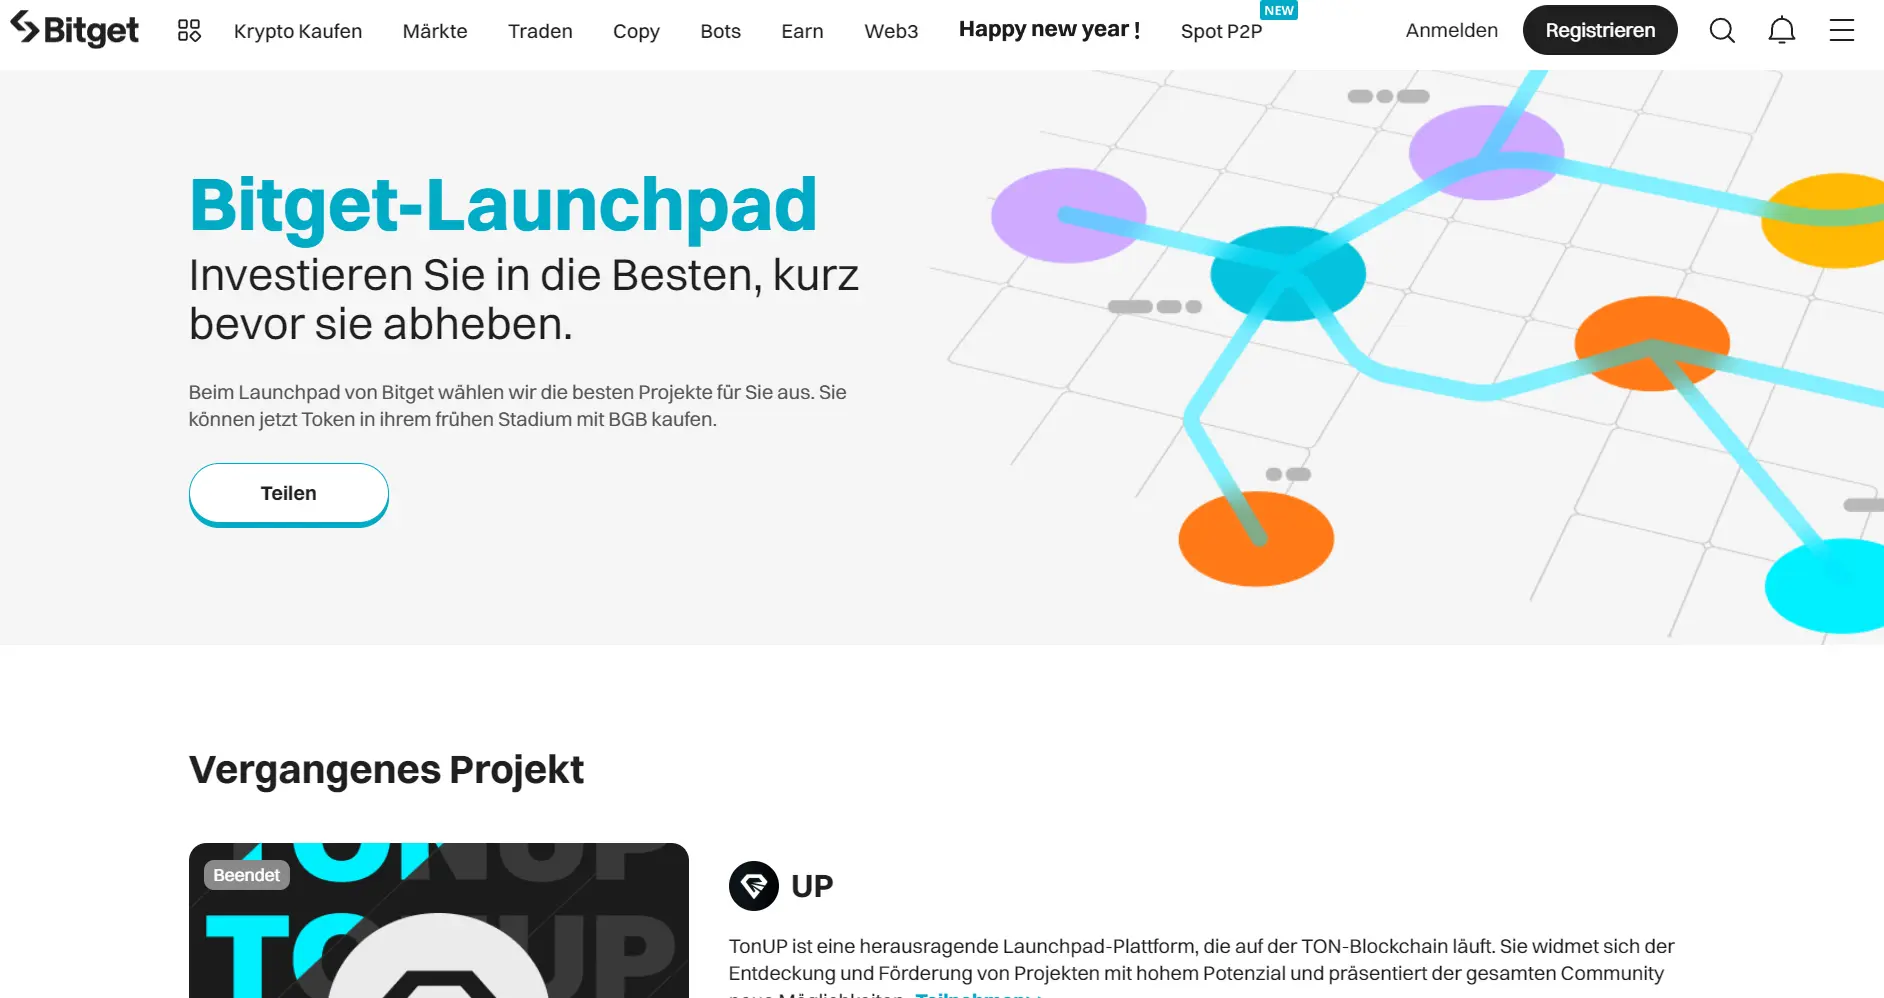 Auf der Startseite des Bitget Launchpads kannst Du Dir die vergangenen Projekte ansehen.